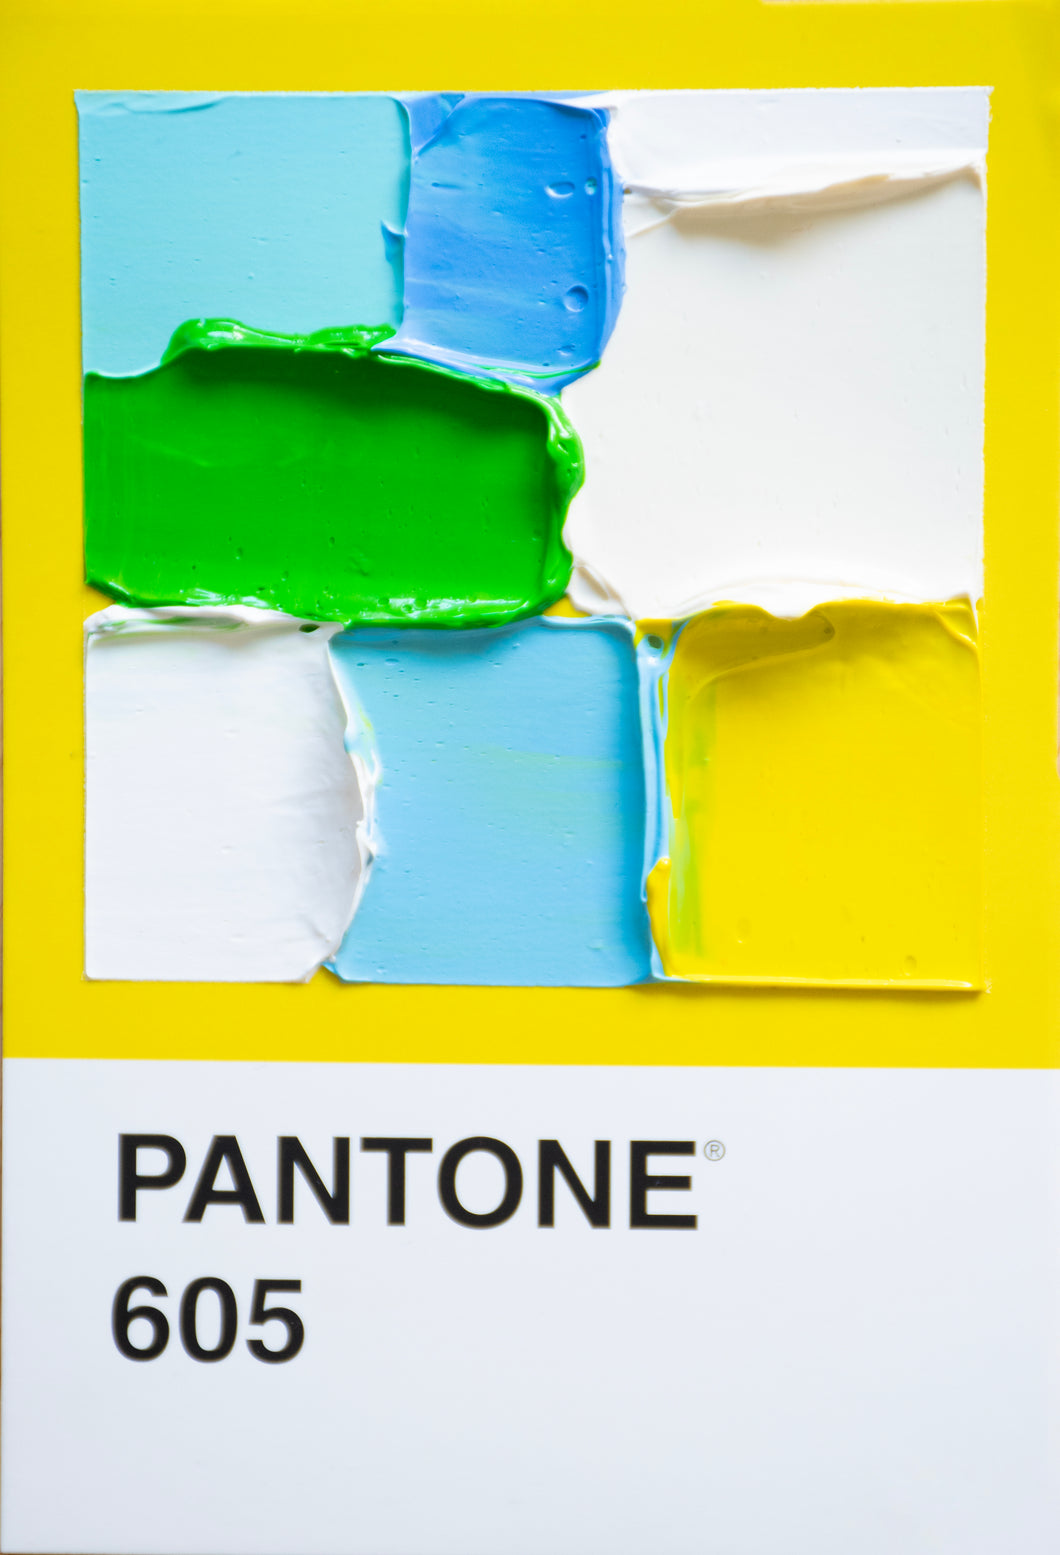 Pantone 605